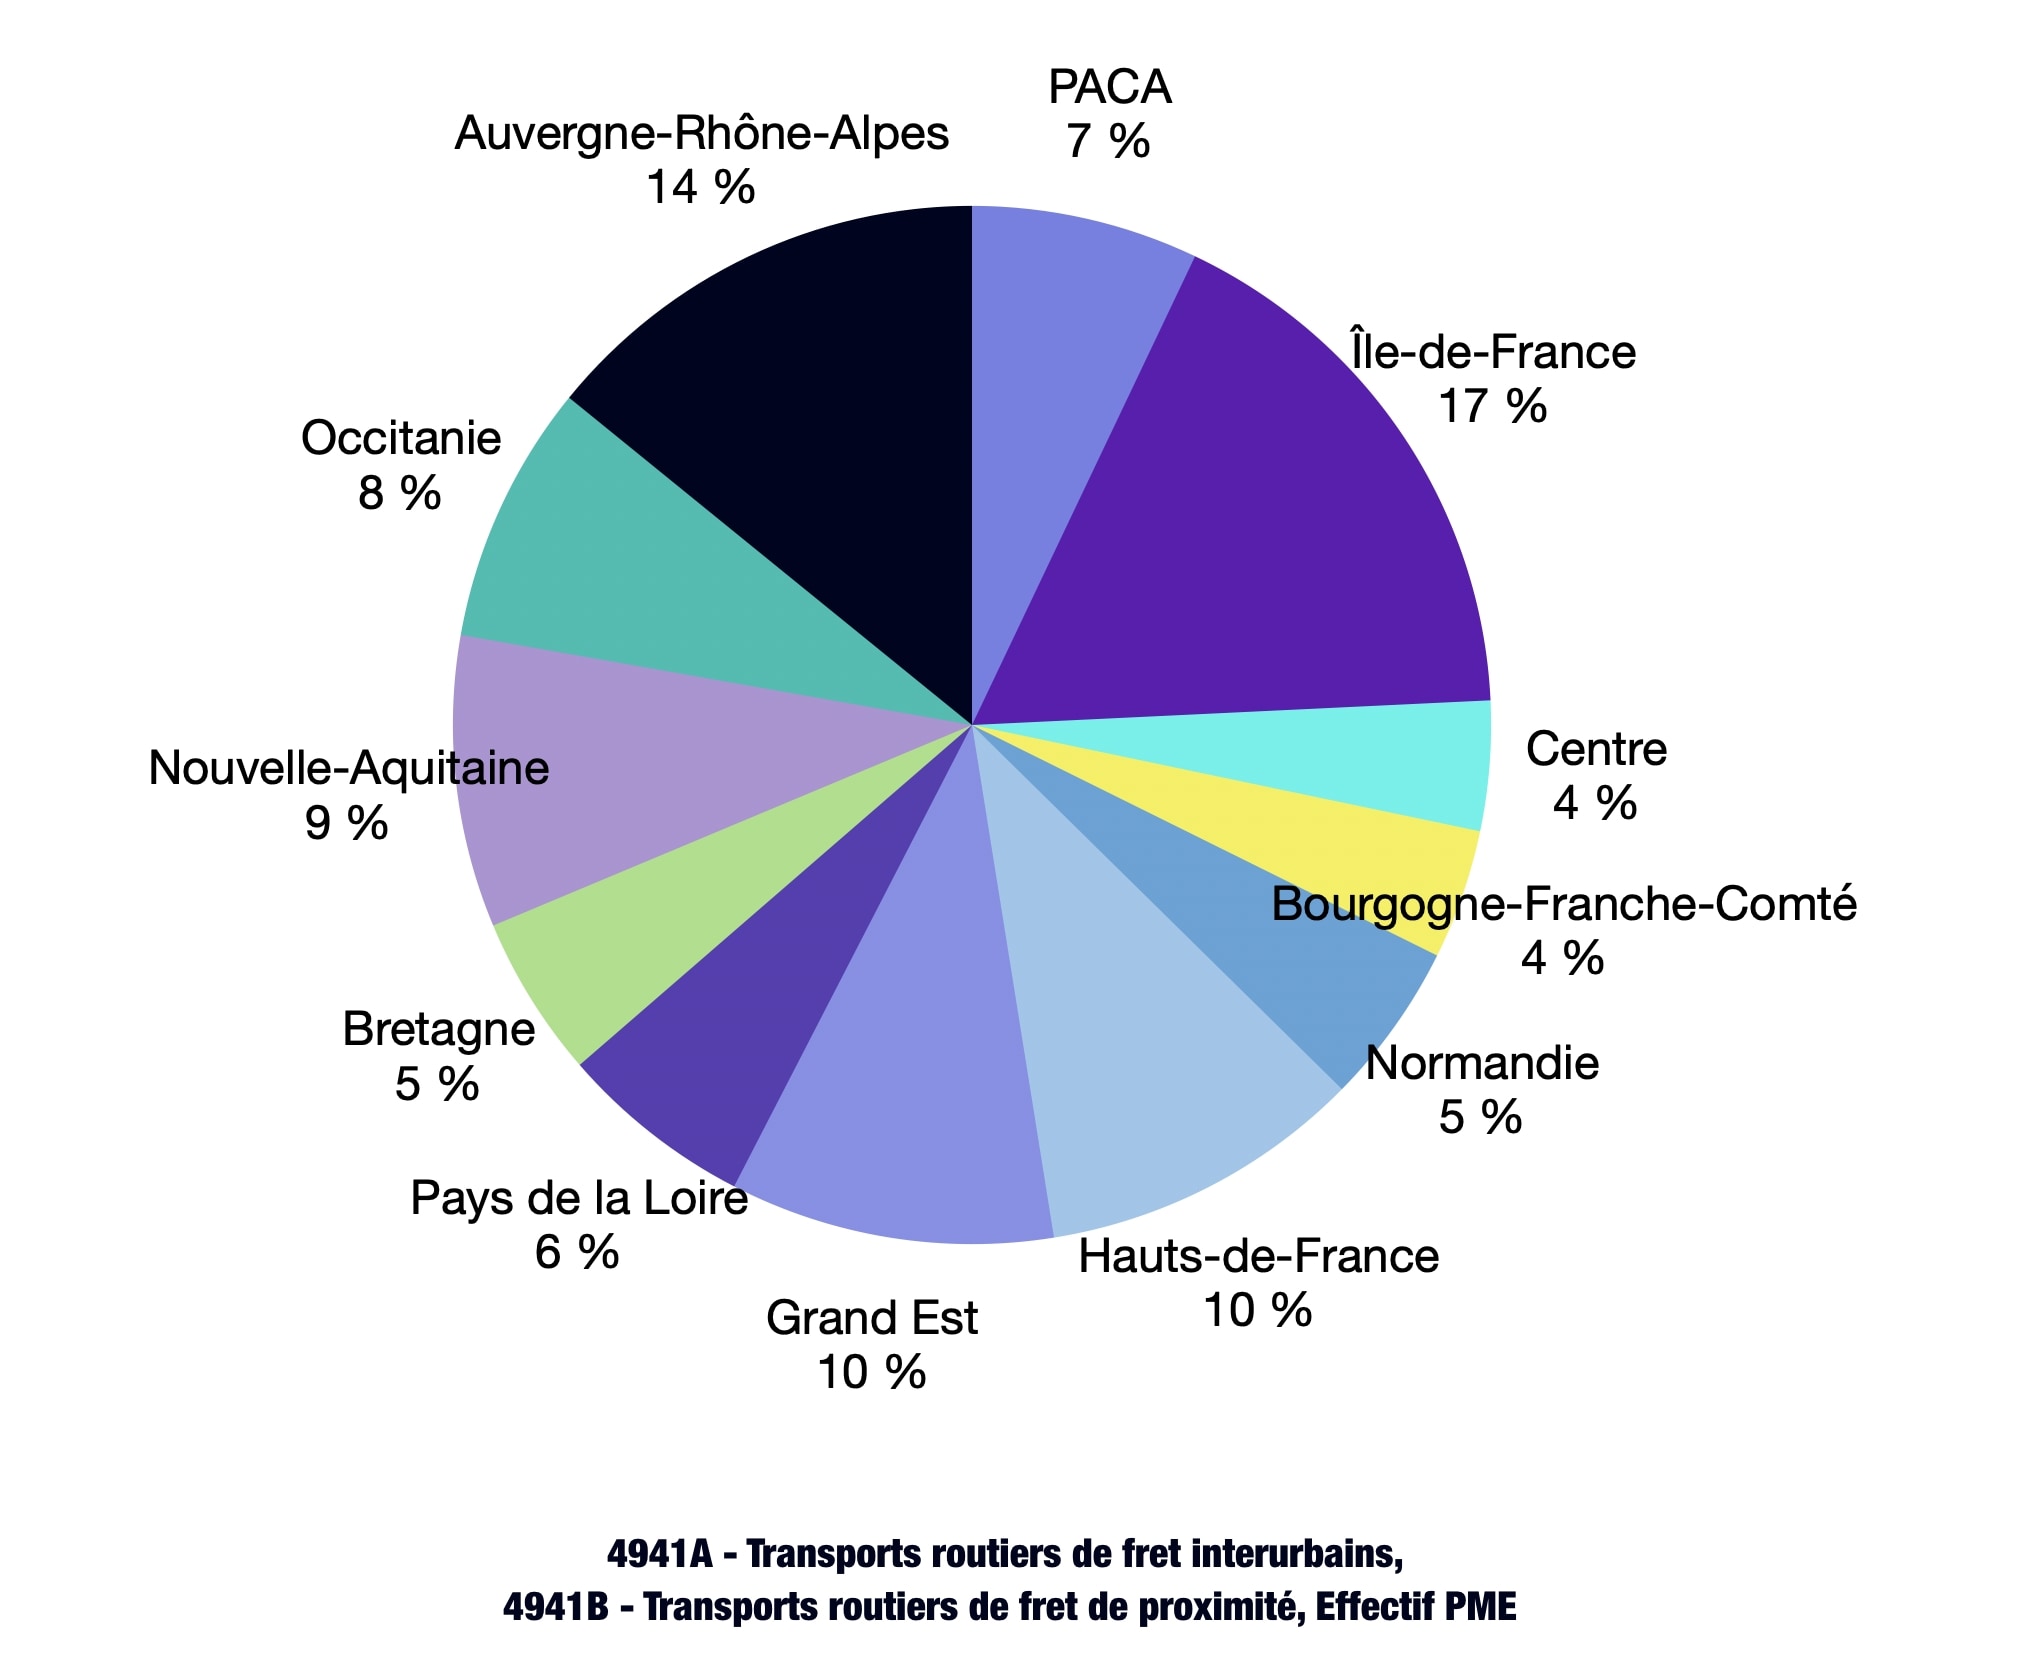 Diagramme présentant la répartition des entreprises de transports routiers de fret interurbains et de fret de proximité en France.